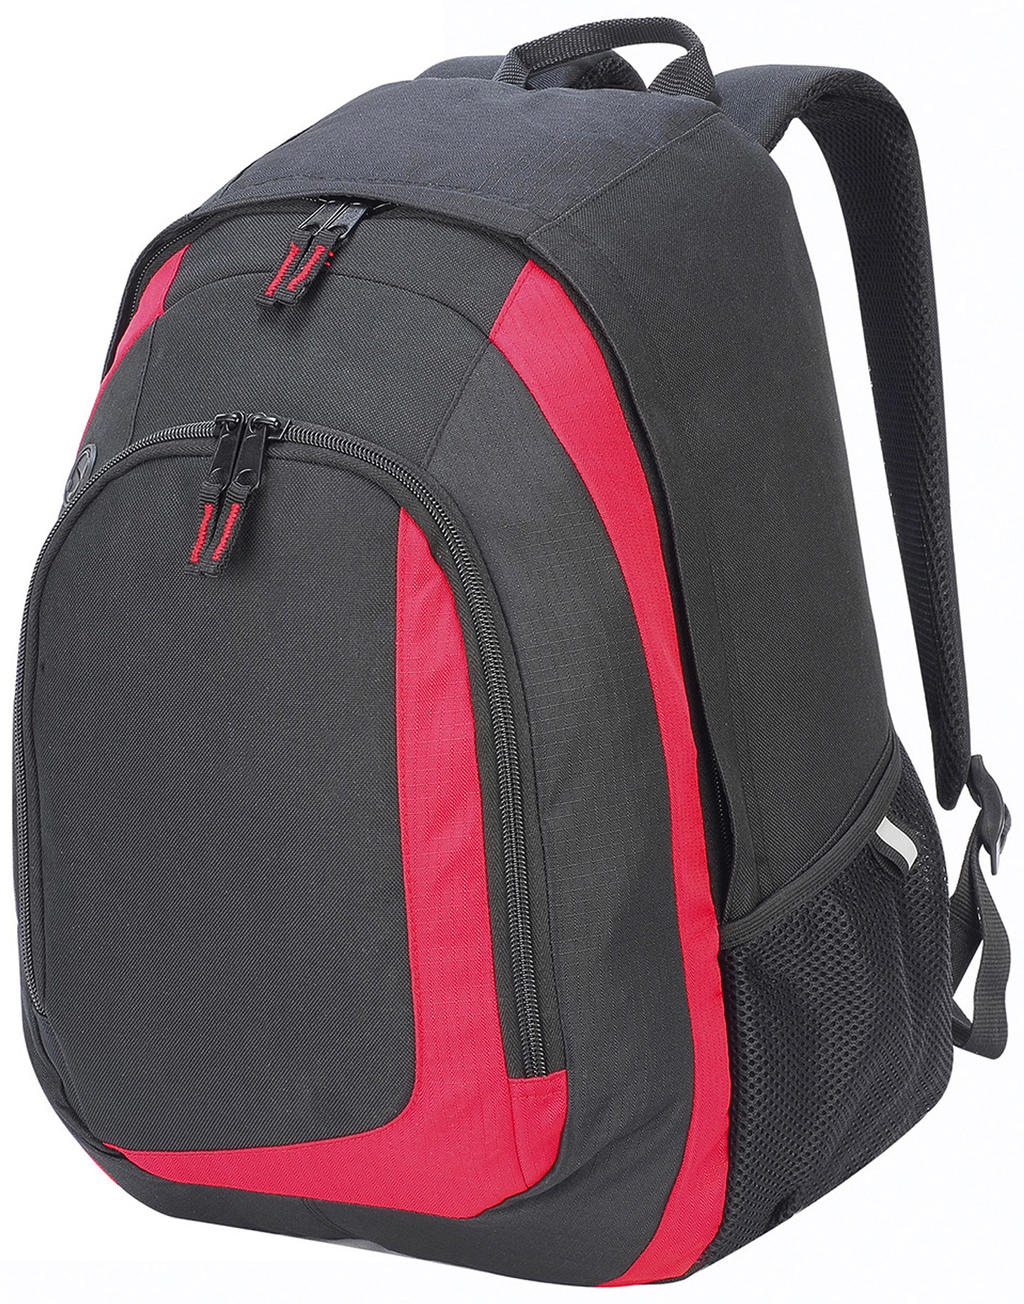  Geneva Backpack in Farbe Black